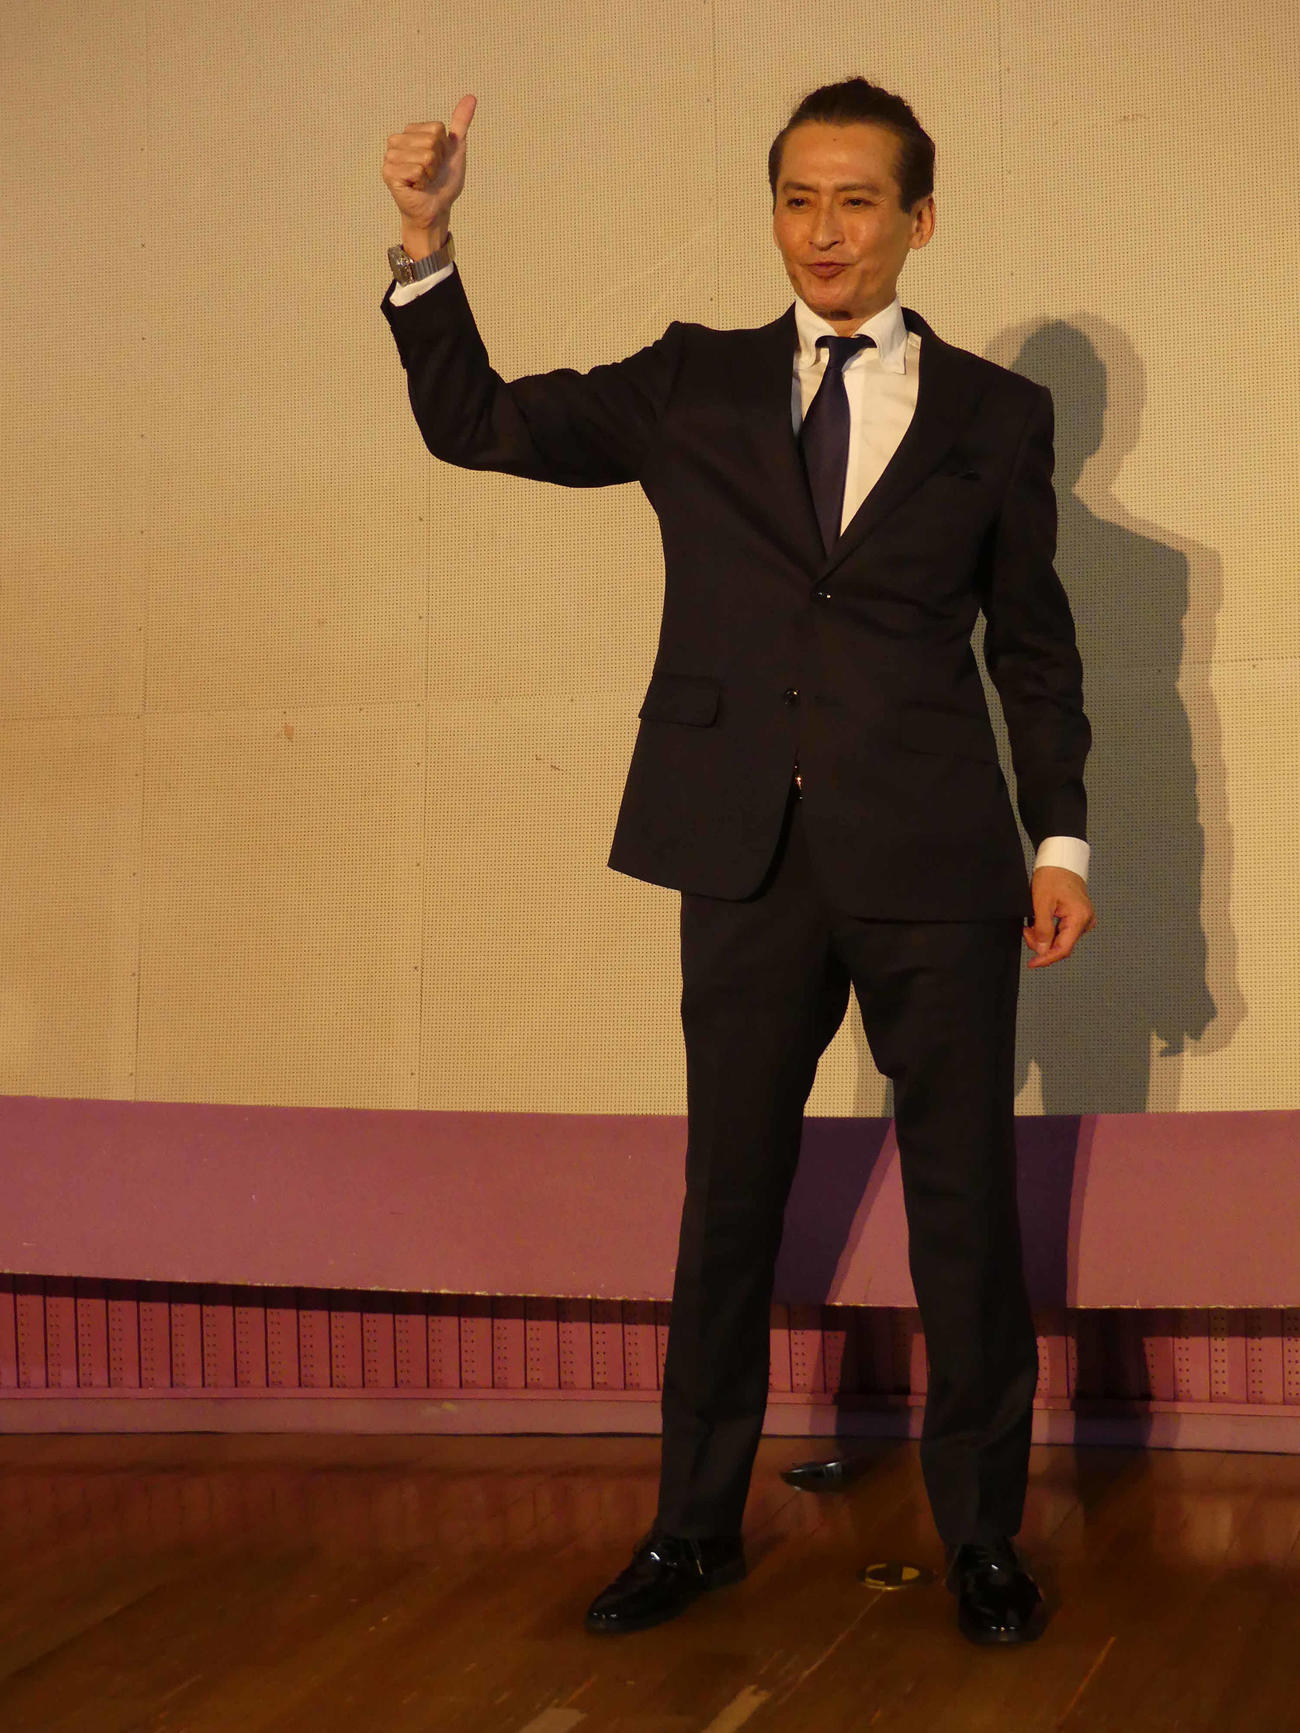 東京都北区長選に出馬を表明し、サムアップのポーズに応じる大沢樹生（撮影・中山知子）